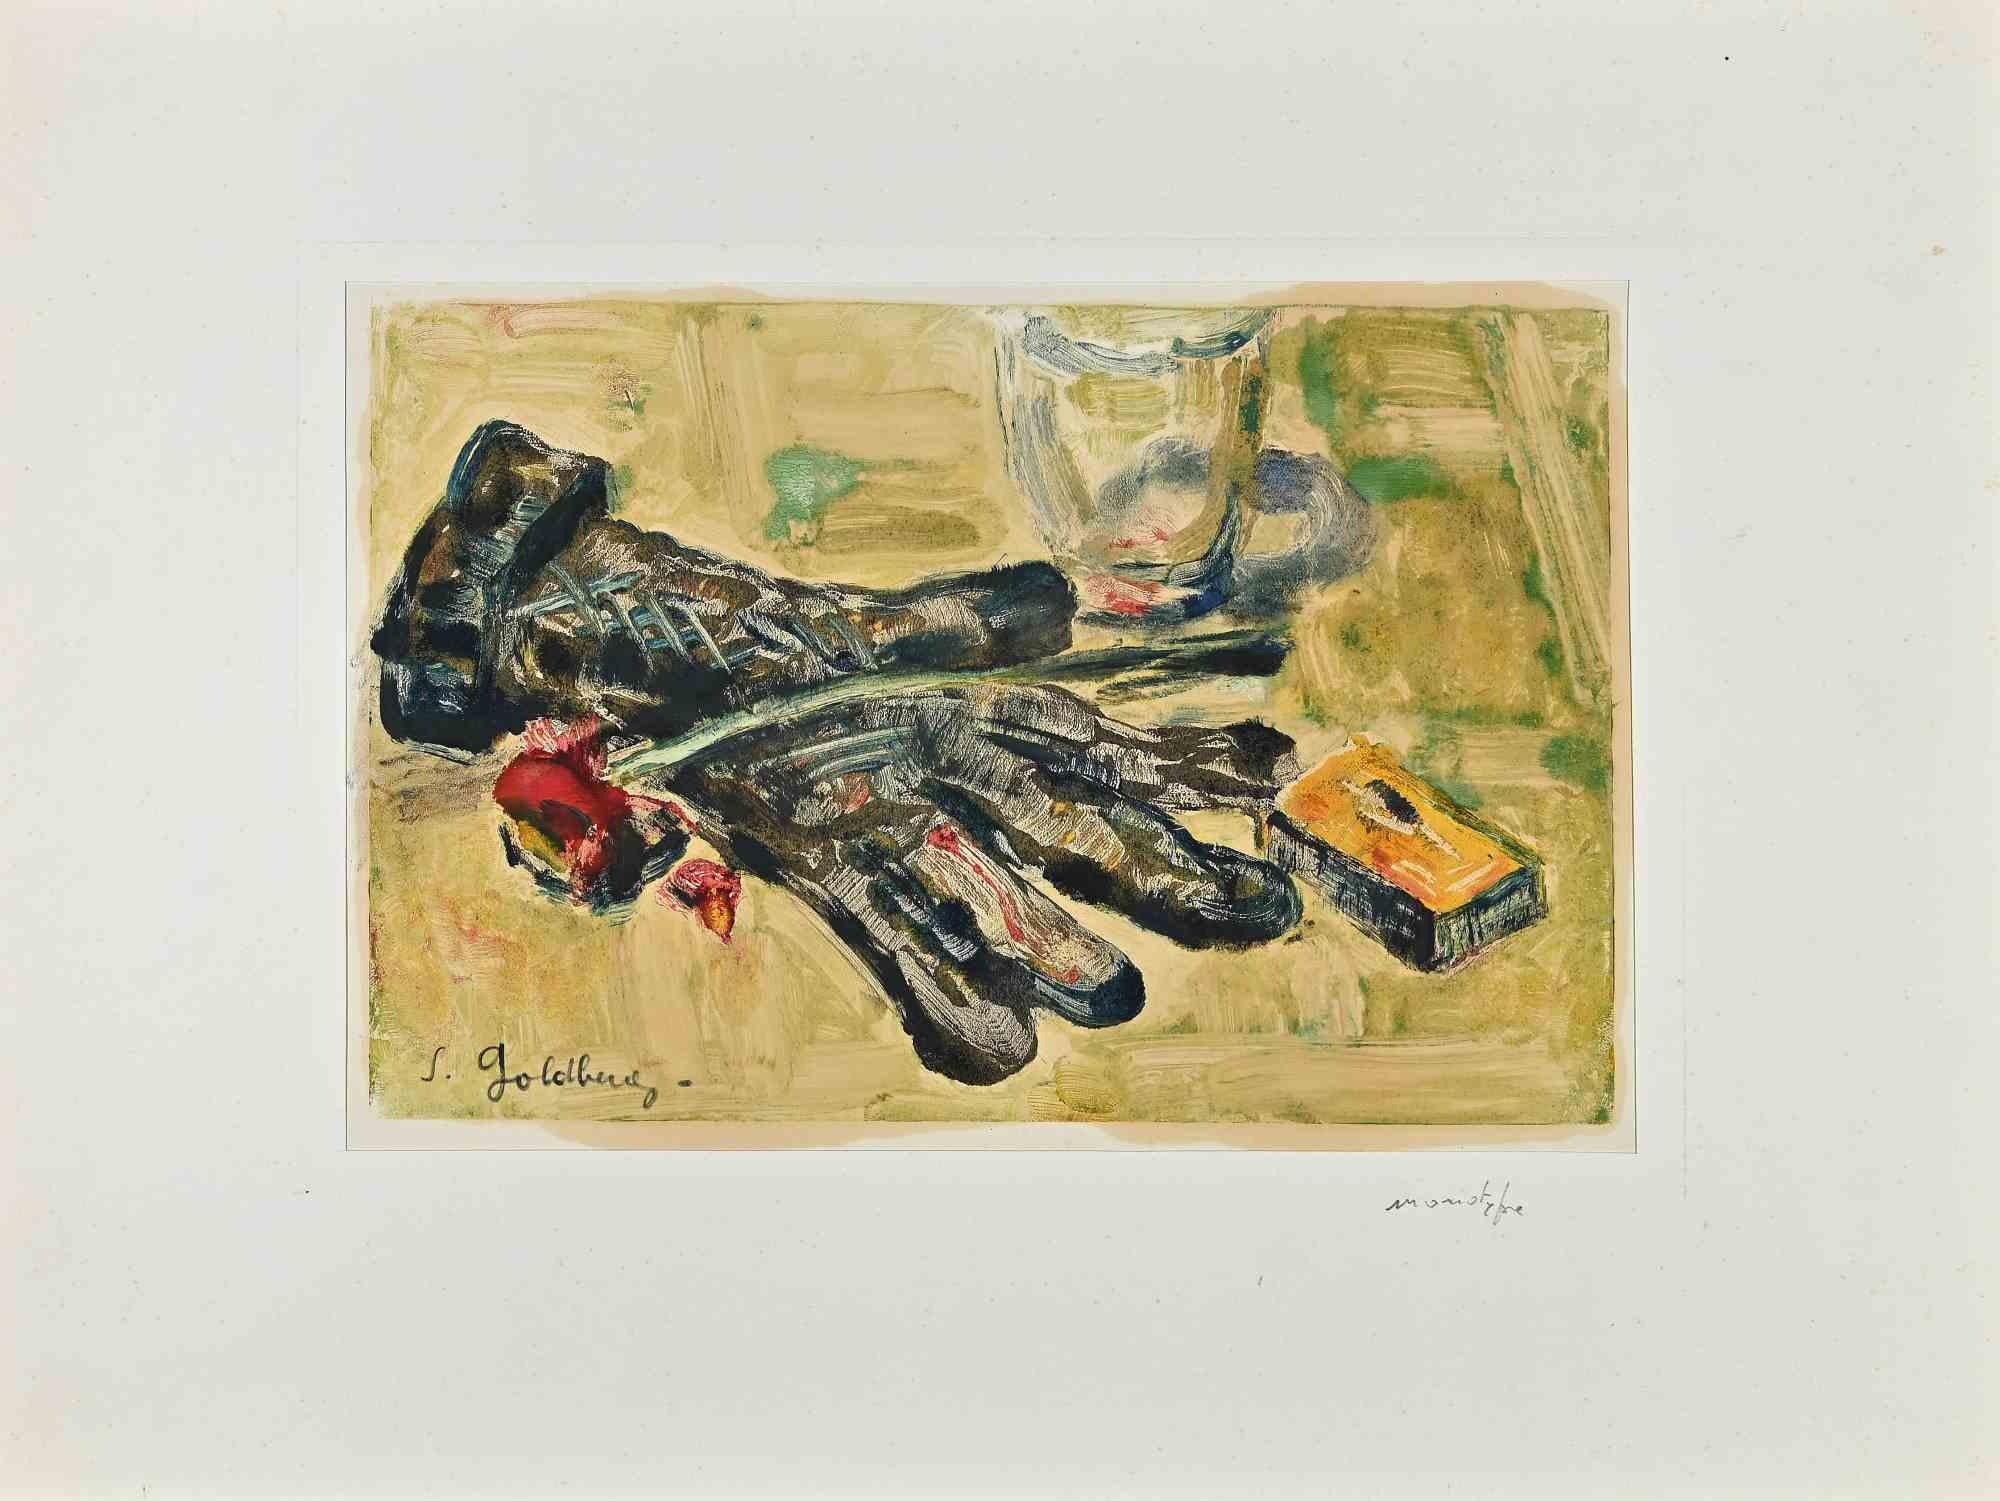 Stillleben mit Handschuh ist ein Monotypie-Druck von Simon Goldberg (1916-2002).

Guter Zustand auf vergilbtem Papier, mit einem Passepartout aus Karton (32x43 cm).

Handsigniert vom Künstler in der linken unteren Ecke.

Simon Goldberg war ein